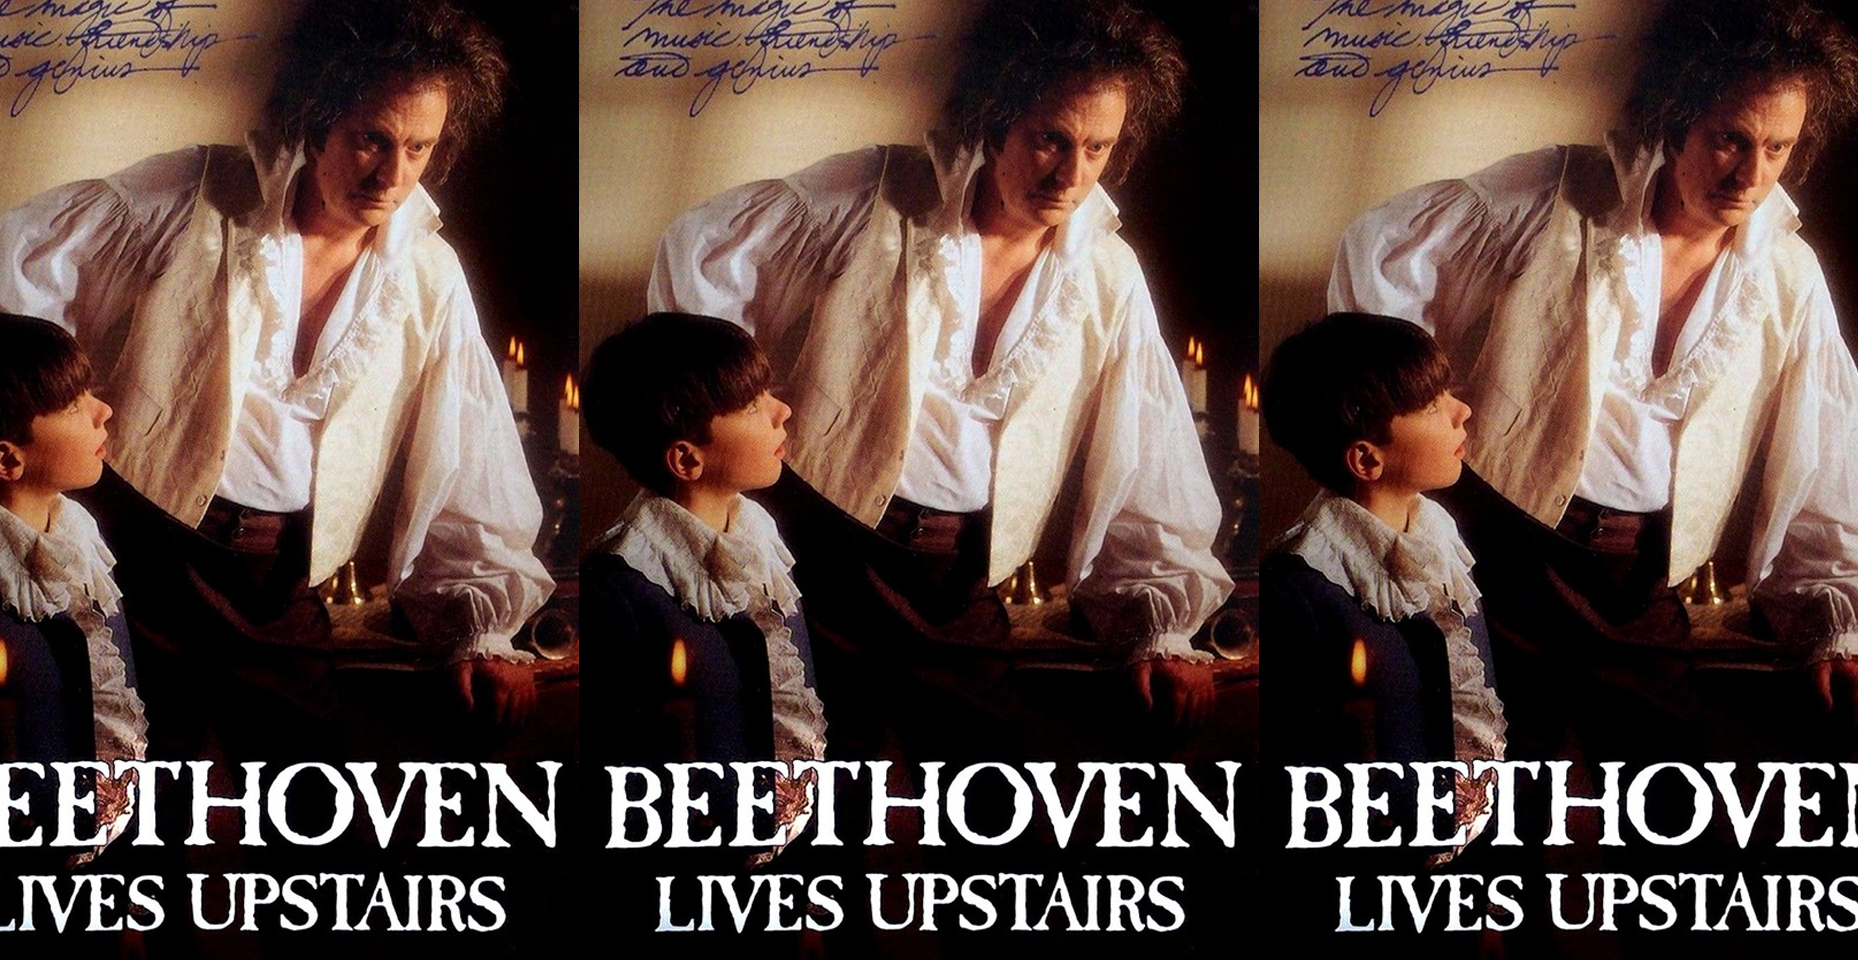 Beethoven vive en el piso de arriba